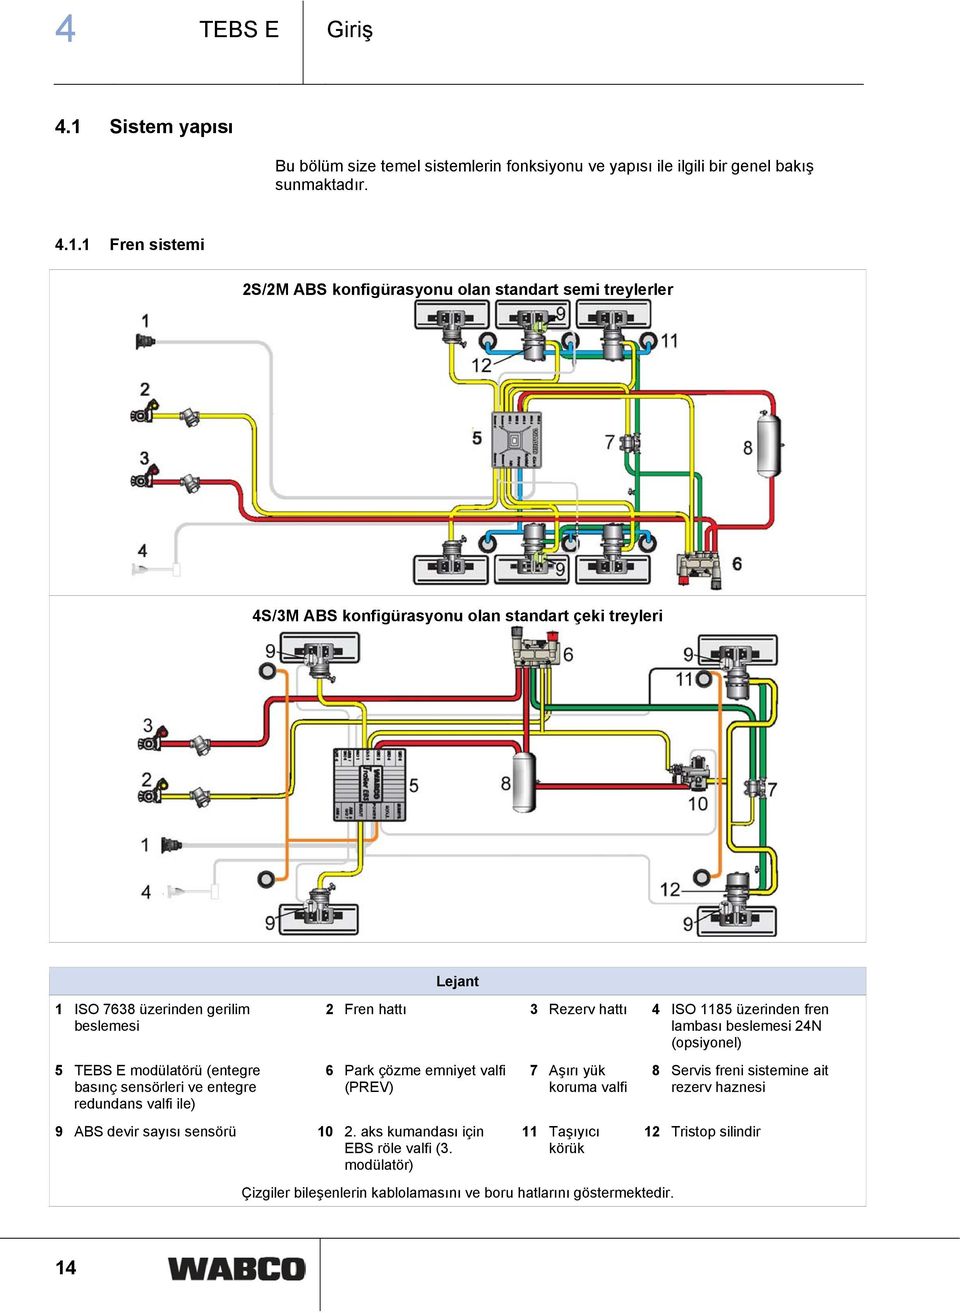 1 Fren sistemi 2S/2M ABS konfigürasyonu olan standart semi treylerler 4S/3M ABS konfigürasyonu olan standart çeki treyleri 1 ISO 7638 üzerinden gerilim beslemesi 5 TEBS E modülatörü (entegre